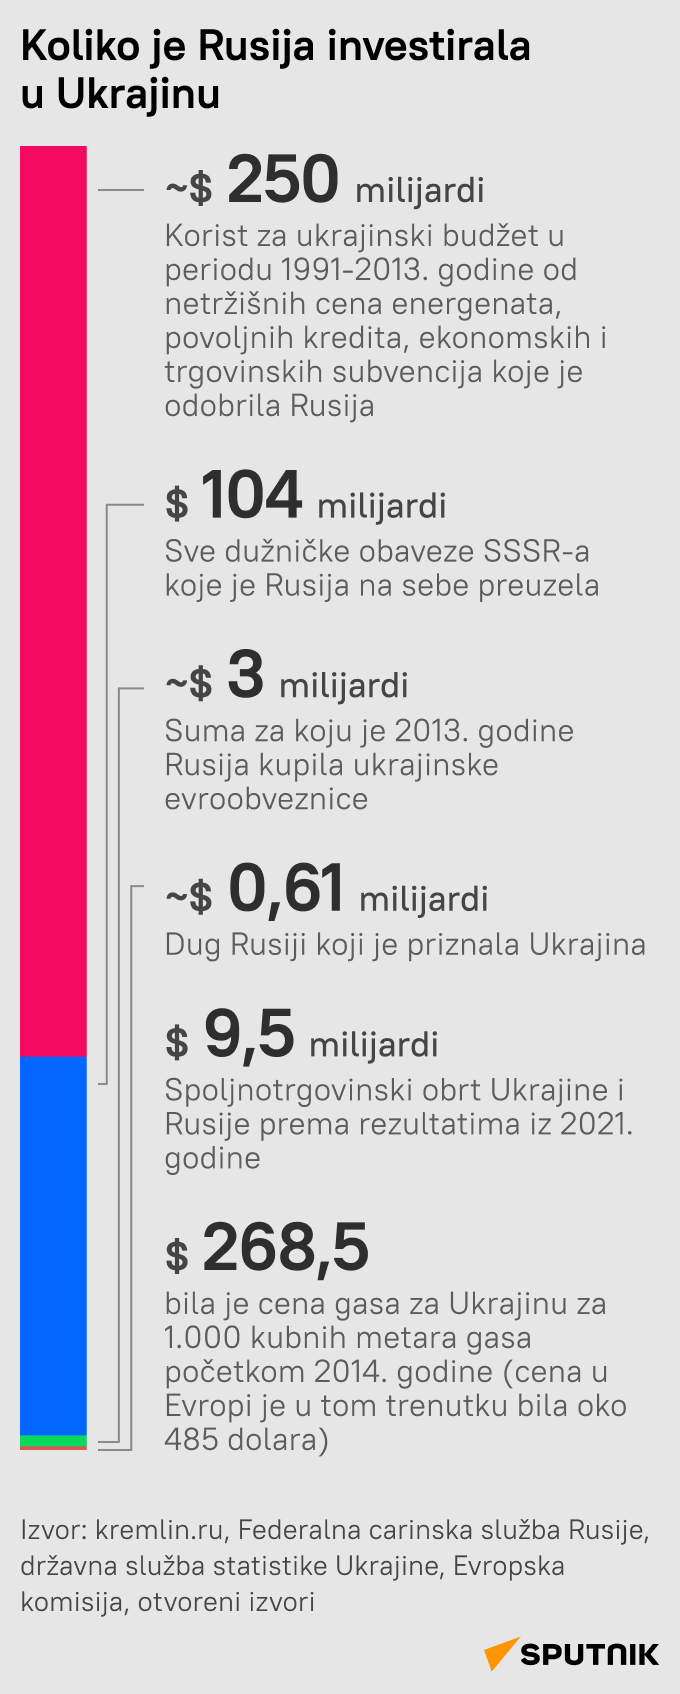 infografika Koliko je Rusija investirala u Ukrajinu LAT mob - Sputnik Srbija